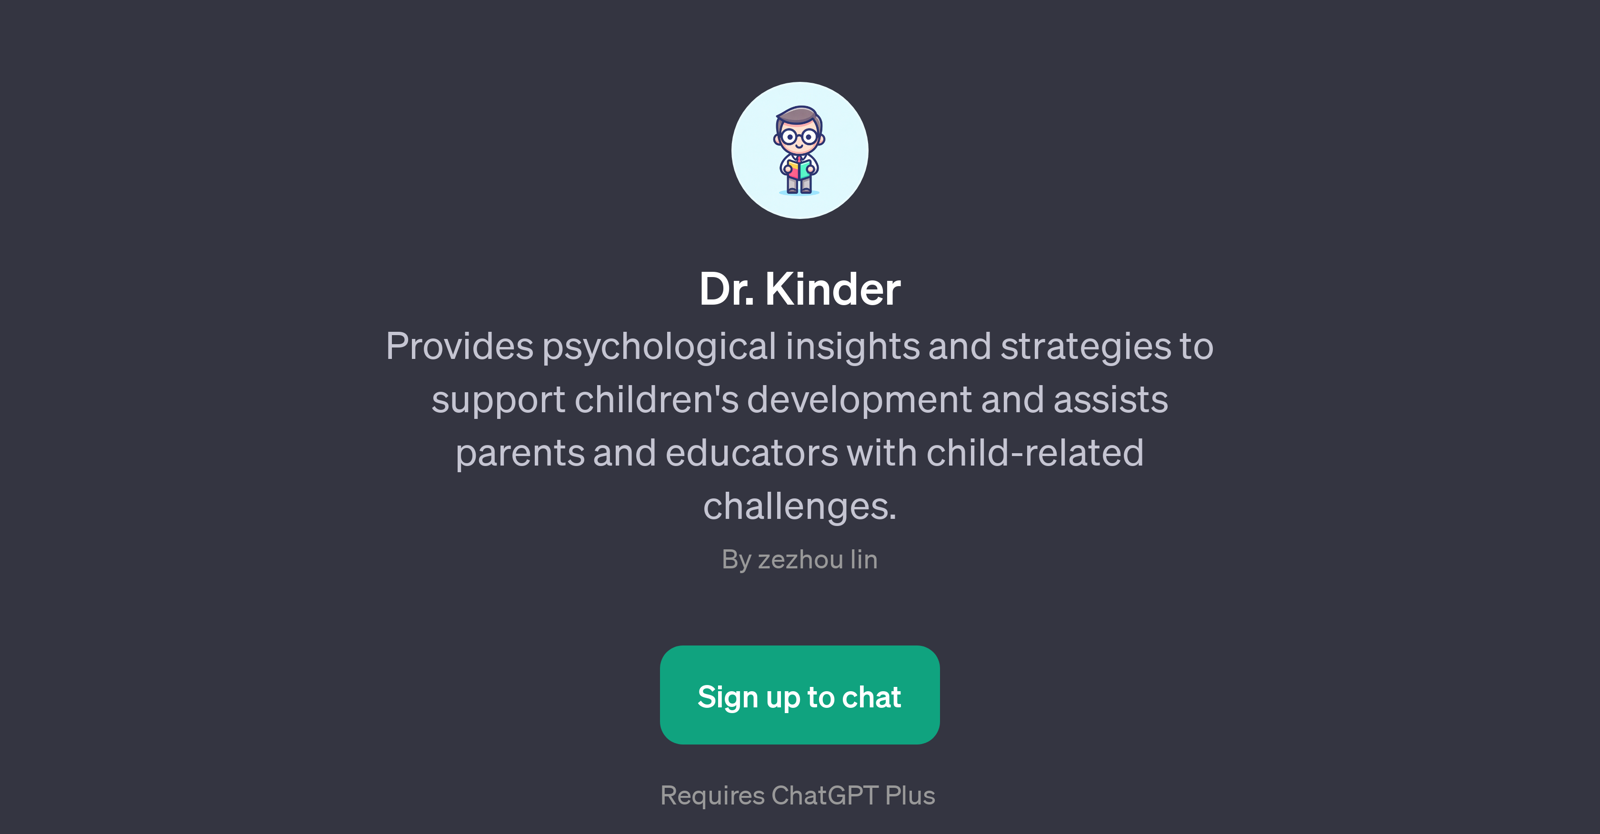 Dr. Kinder website